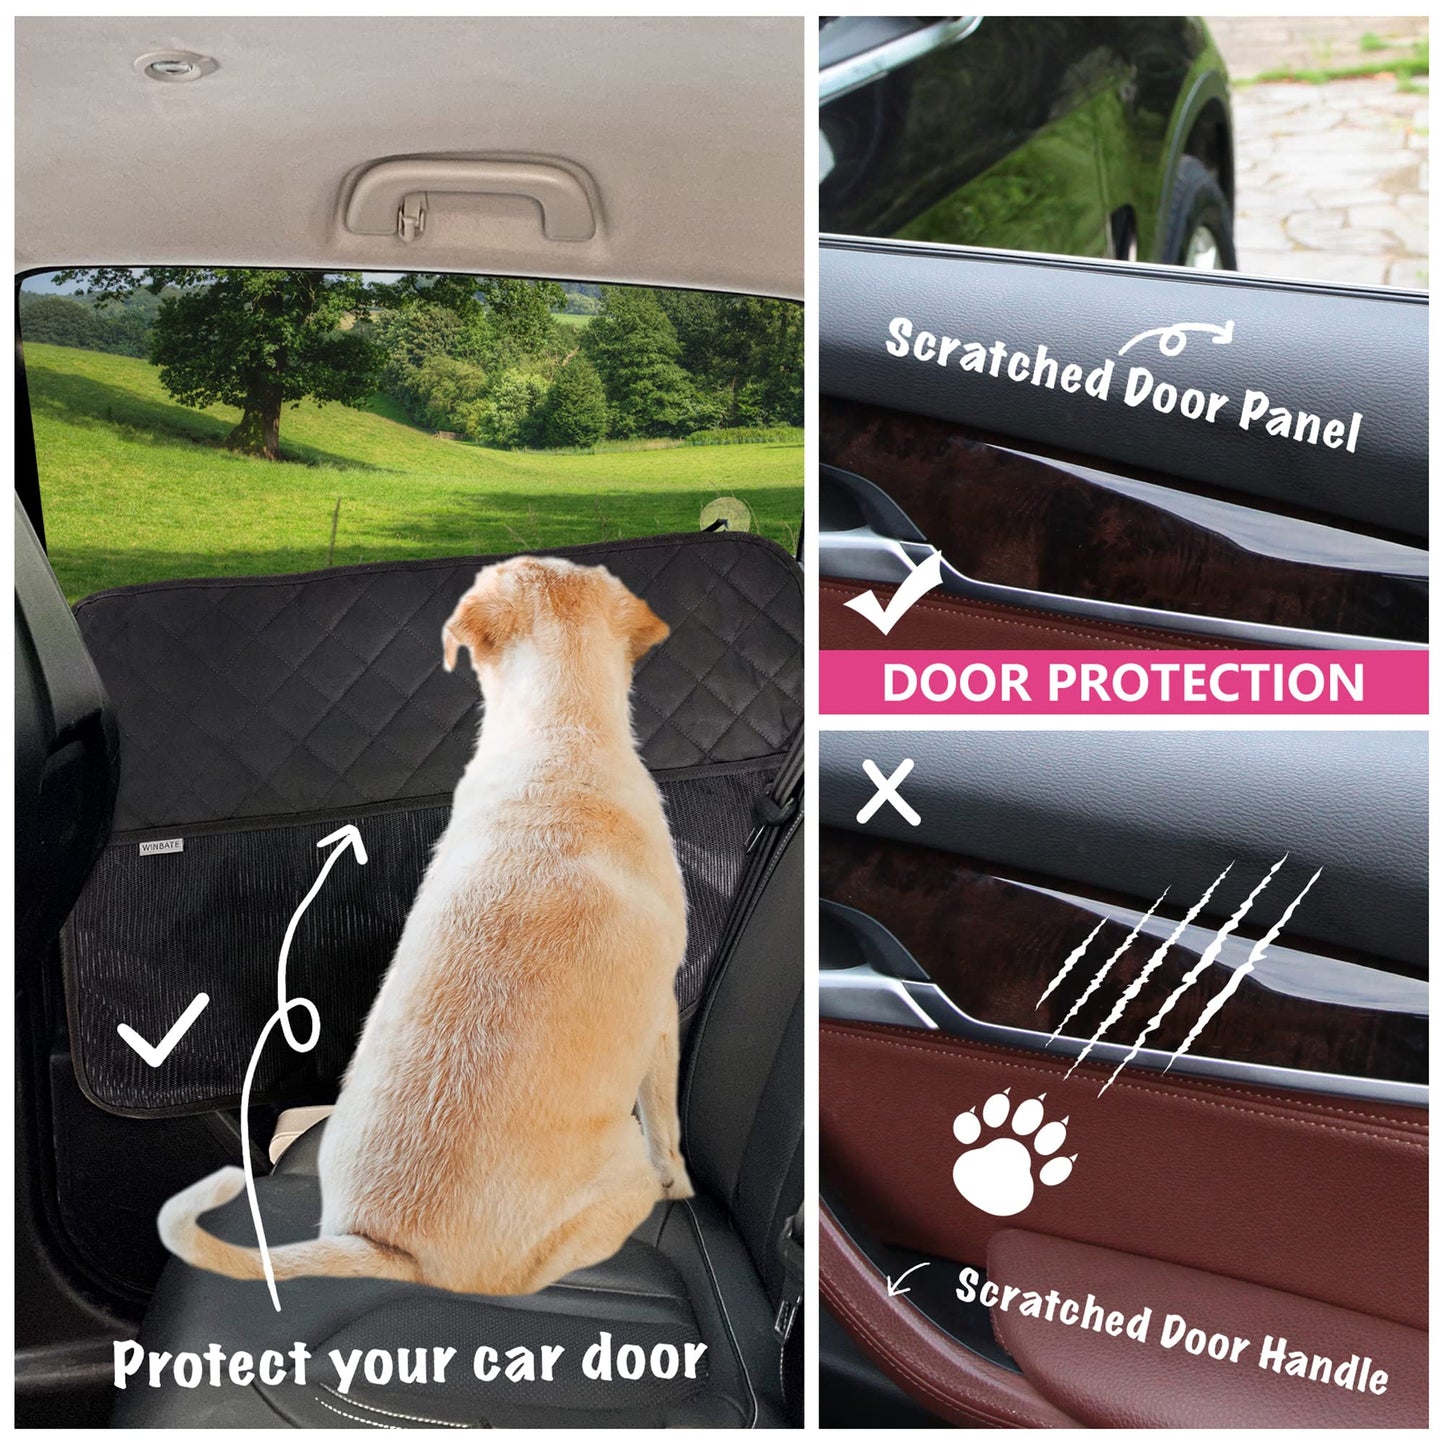 Car Door Protector for Dogs - 2 Pack, Waterproof